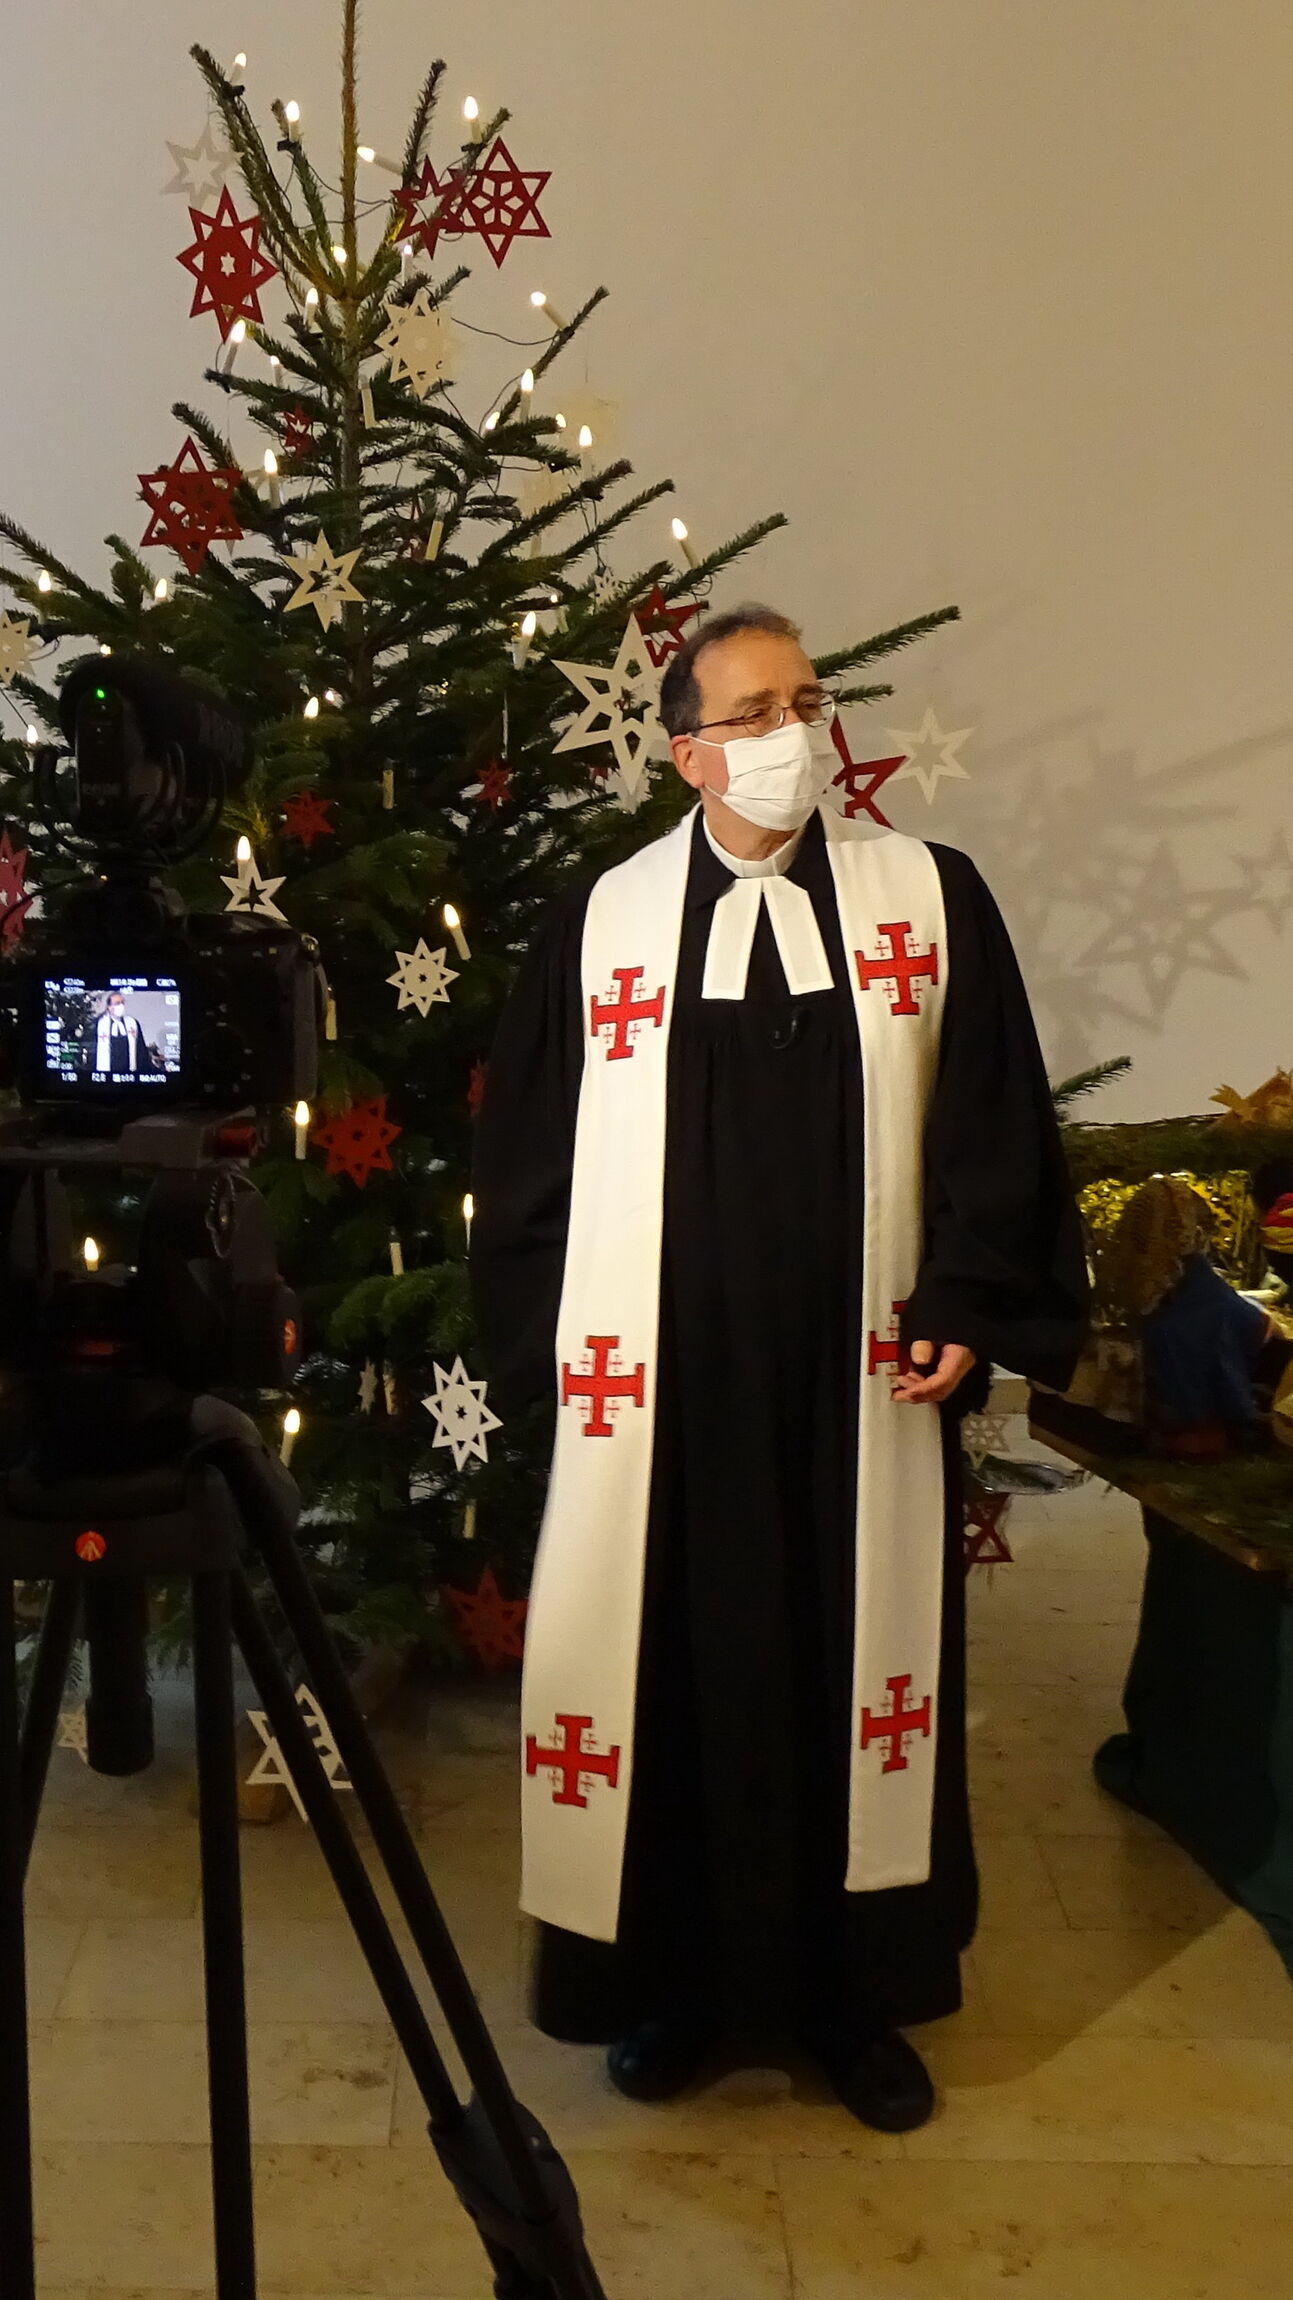 Weihnachtsfilm - making of, Pastor mit Maske